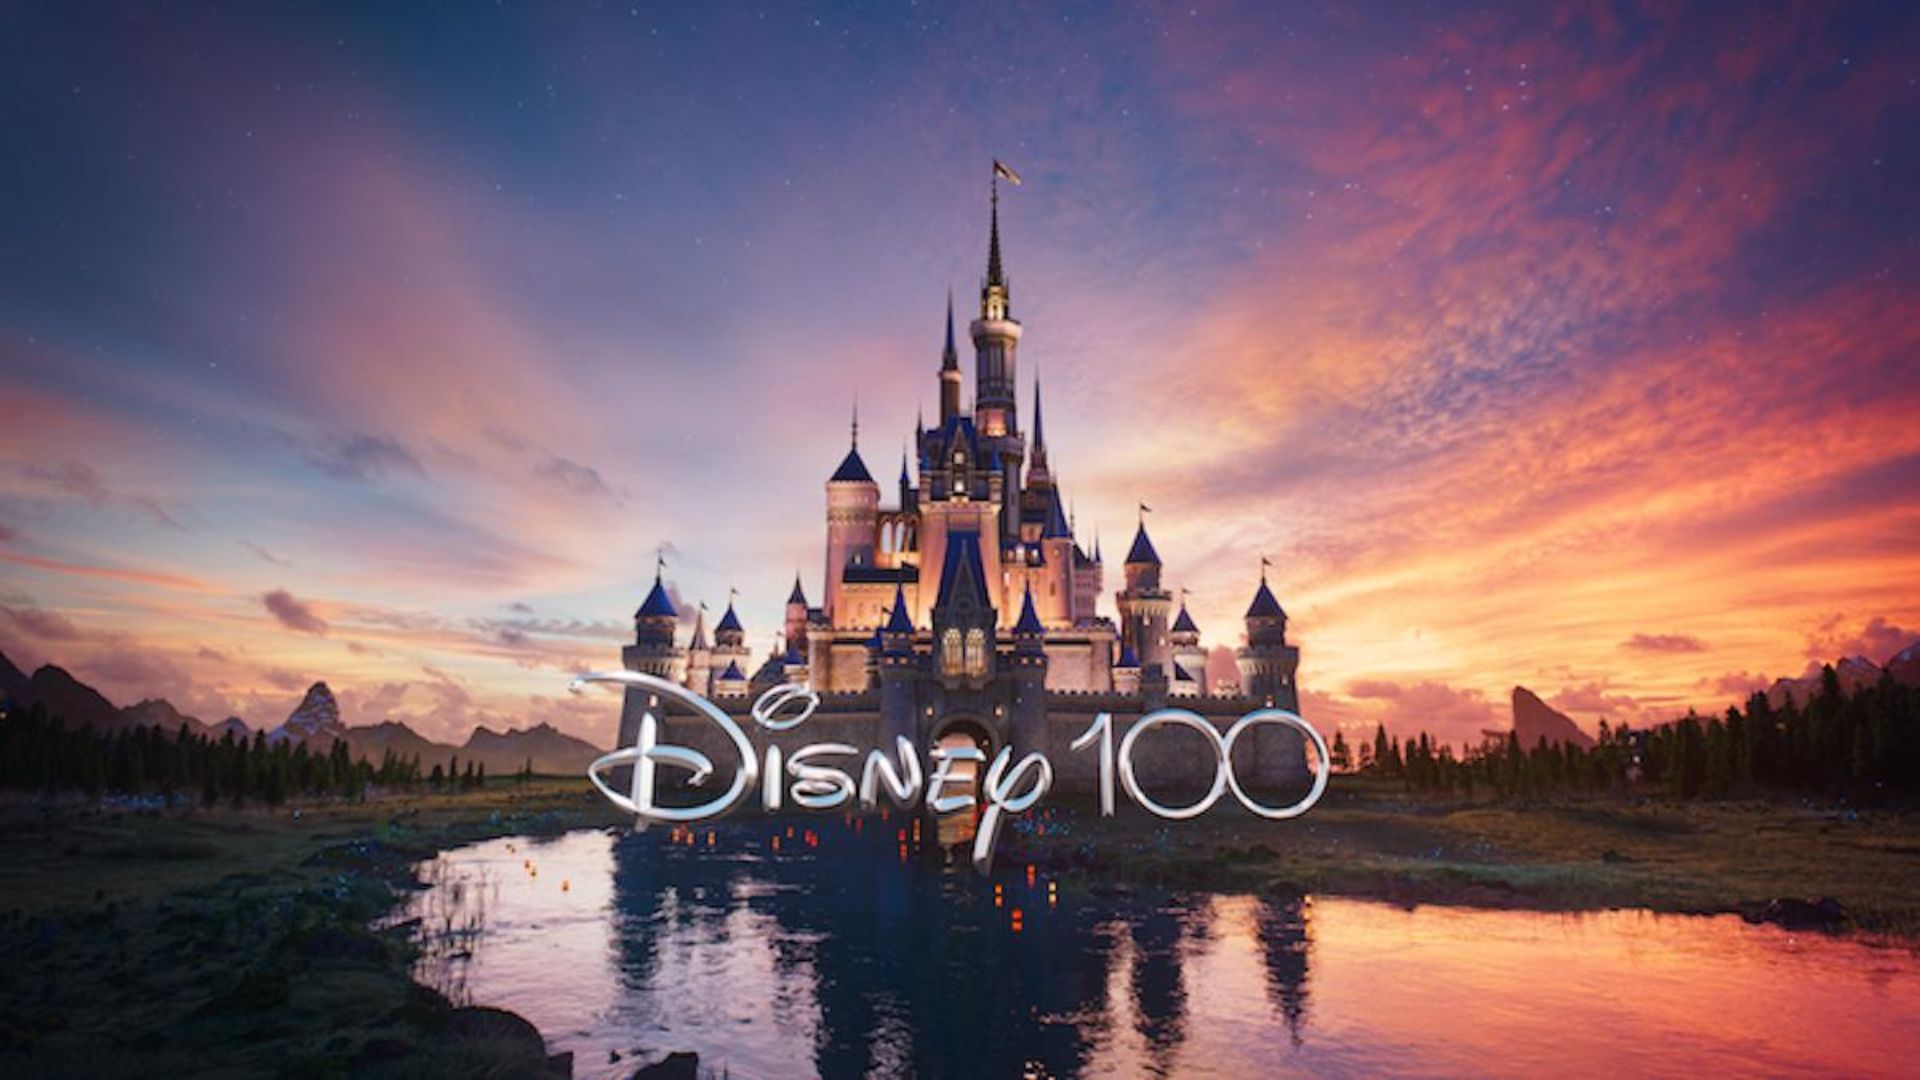 La magia ha llegado': Conoce los eventos que Disney trae a la CDMX